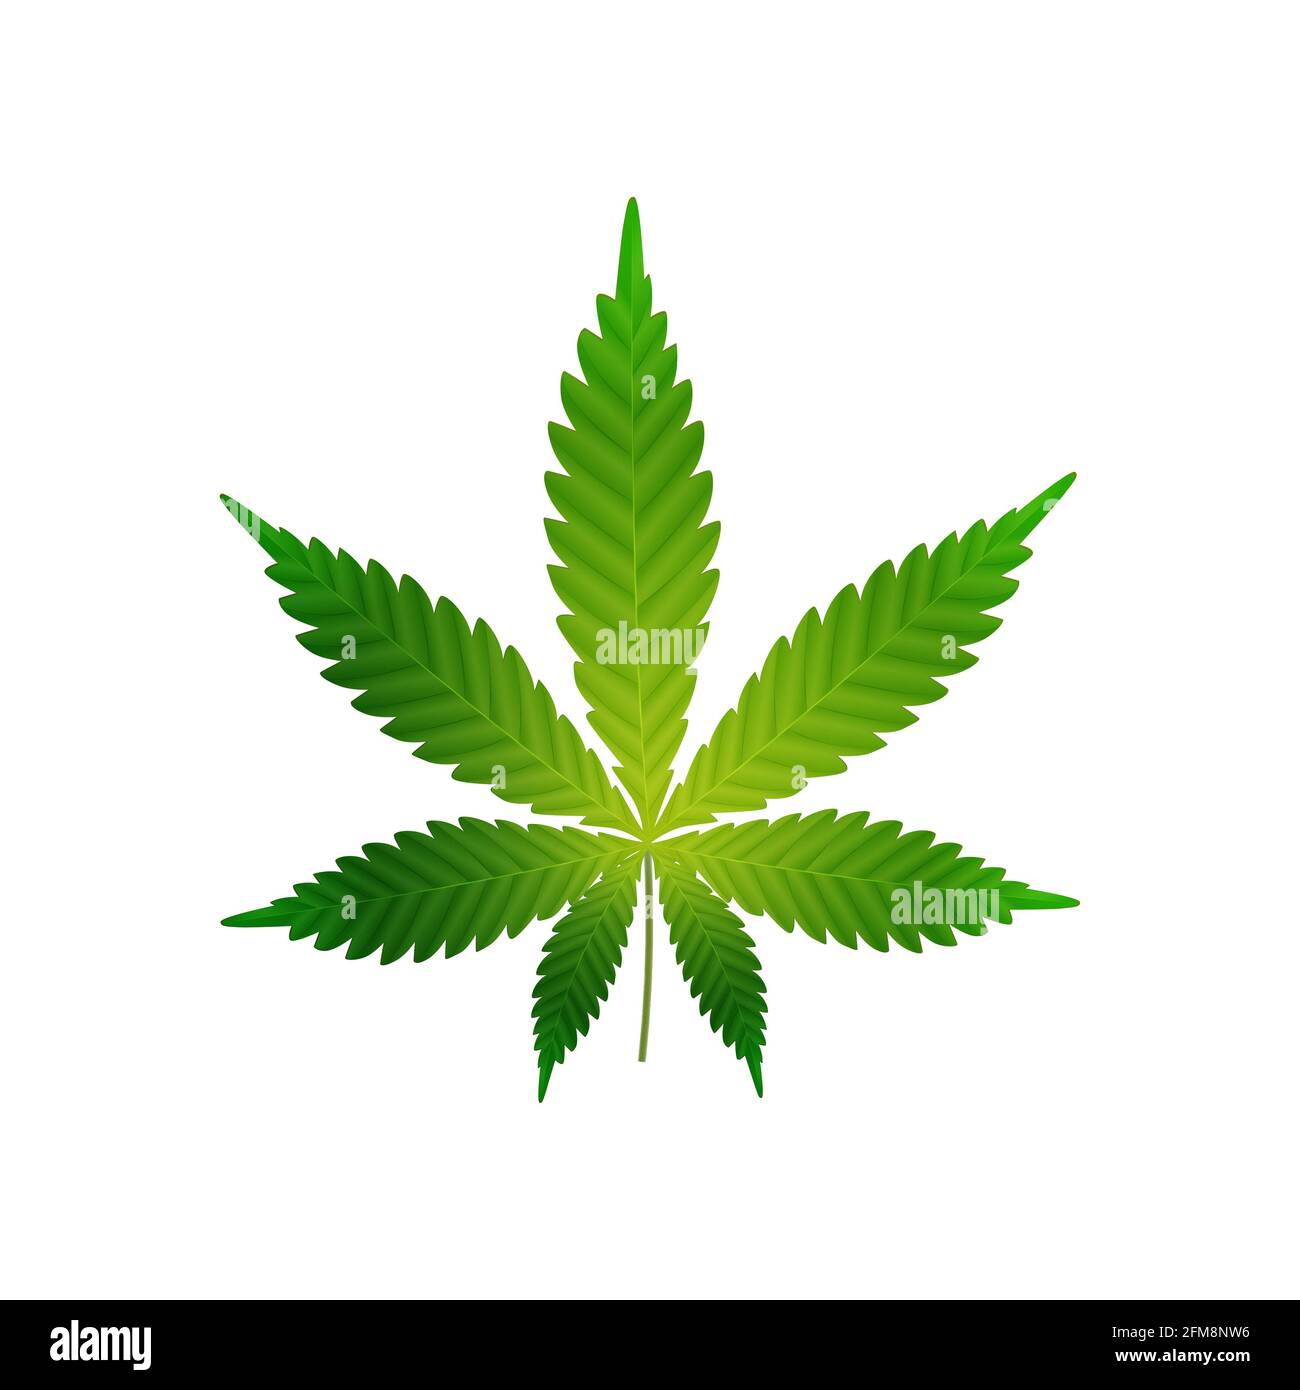 Foglia verde realistica di cannabis isolata su uno sfondo bianco per la tua creatività Foto Stock